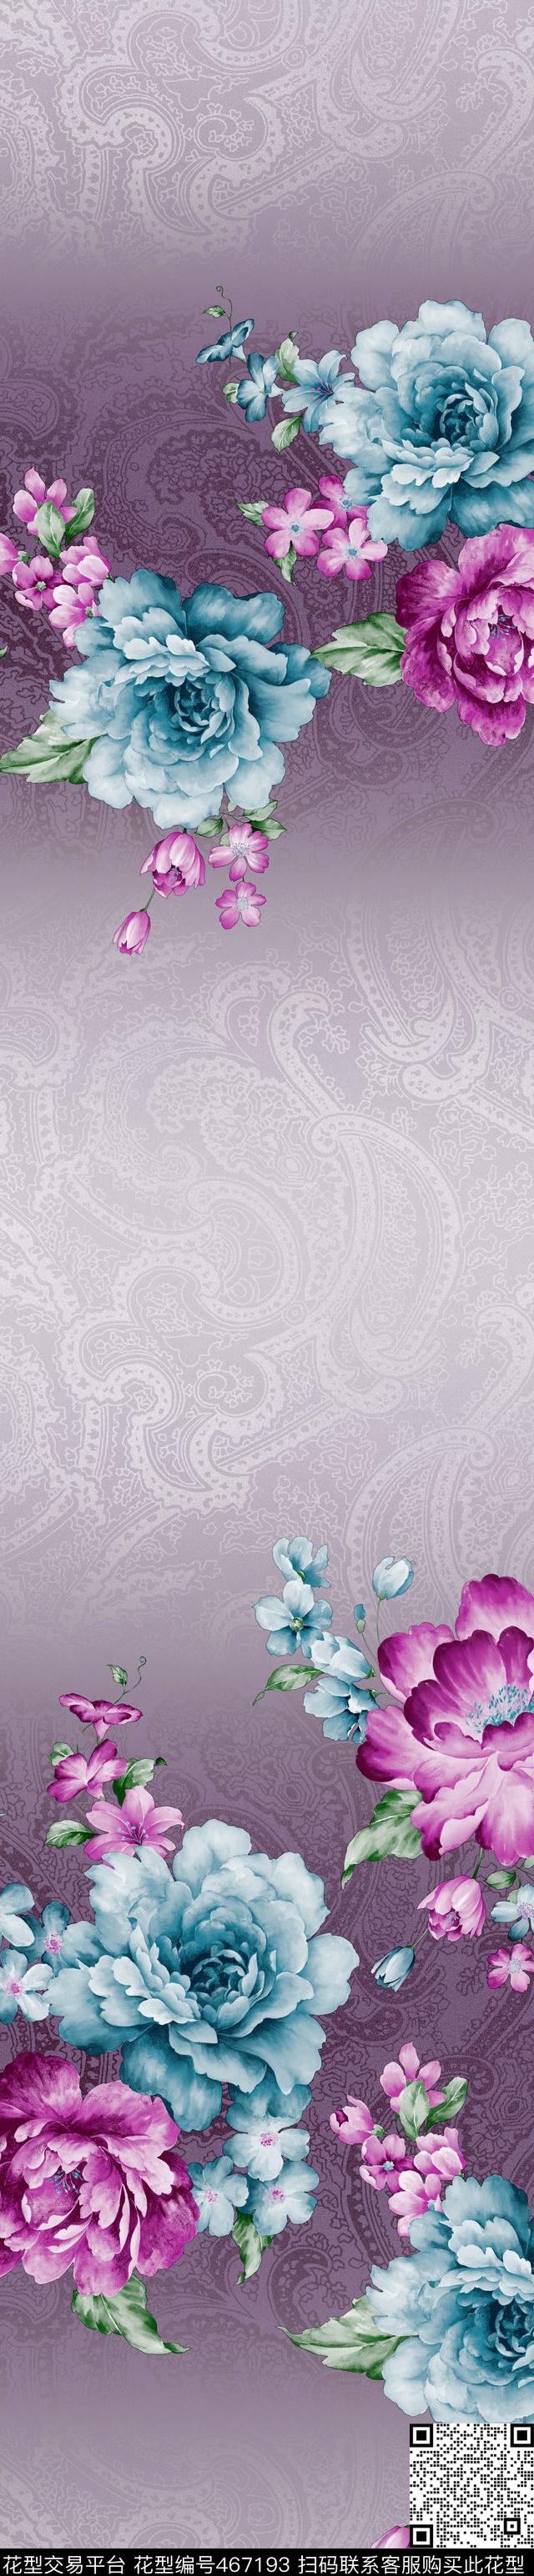 时尚窗帘花型 家纺花型 流行窗帘花型 - 467193 - 时尚窗帘花型 家纺花型 流行窗帘花型 - 传统印花花型 － 窗帘花型设计 － 瓦栏